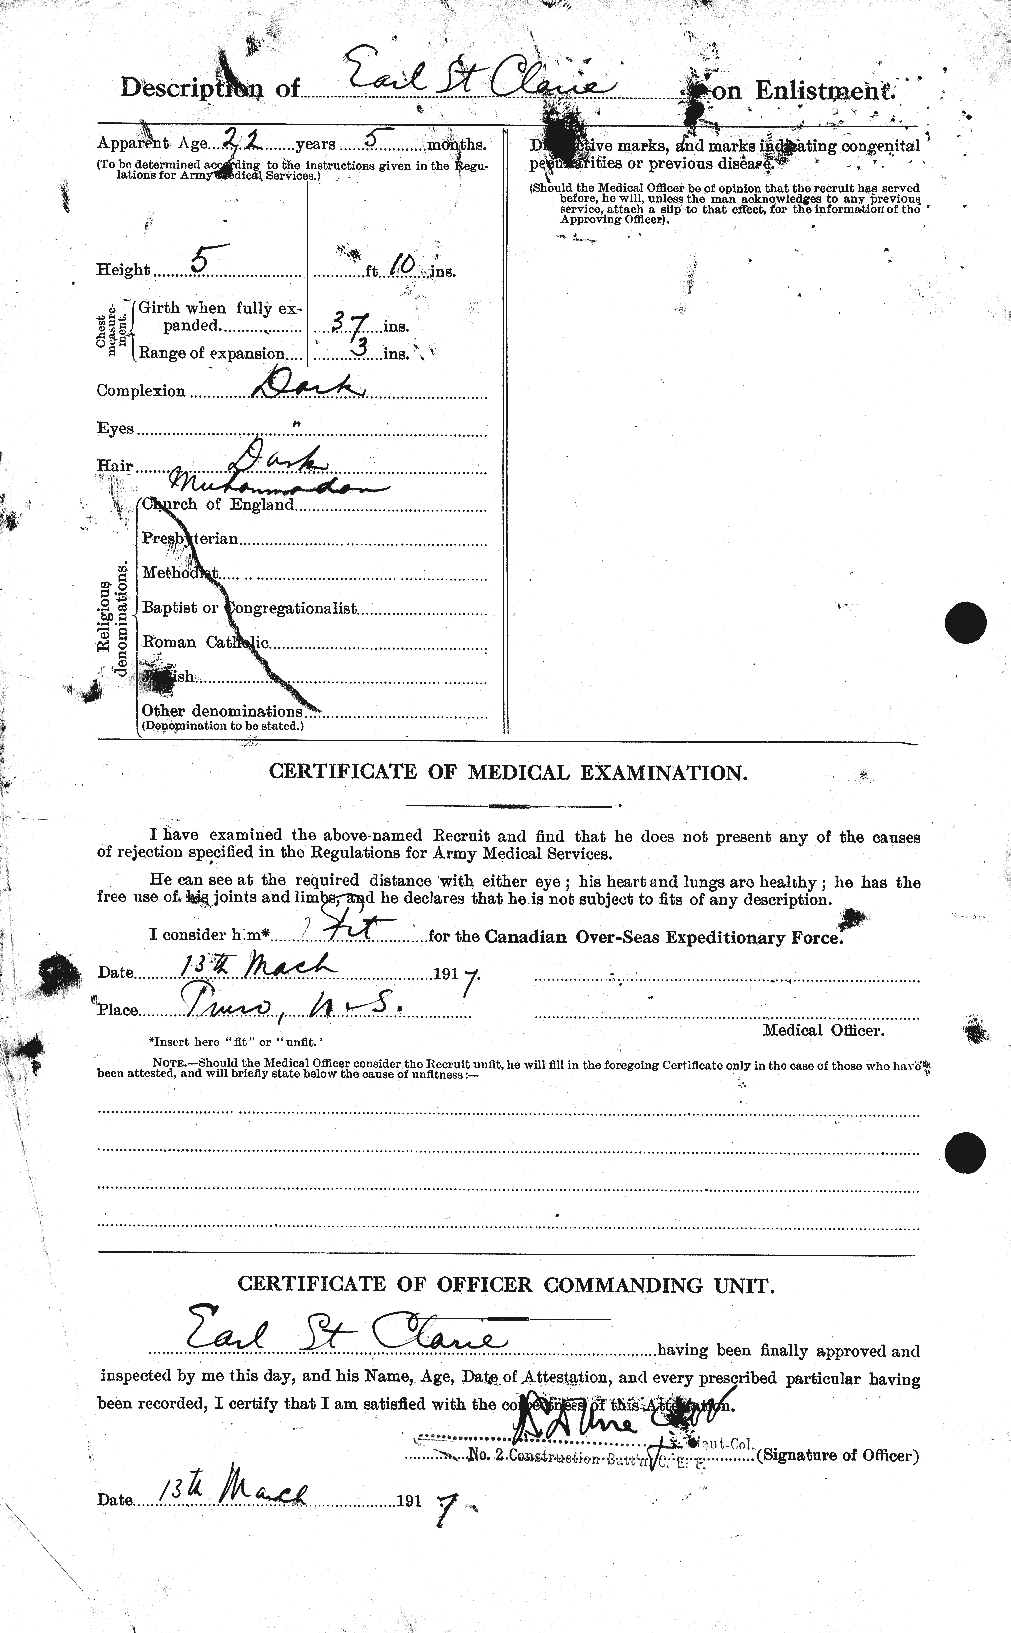 Dossiers du Personnel de la Première Guerre mondiale - CEC 076658b